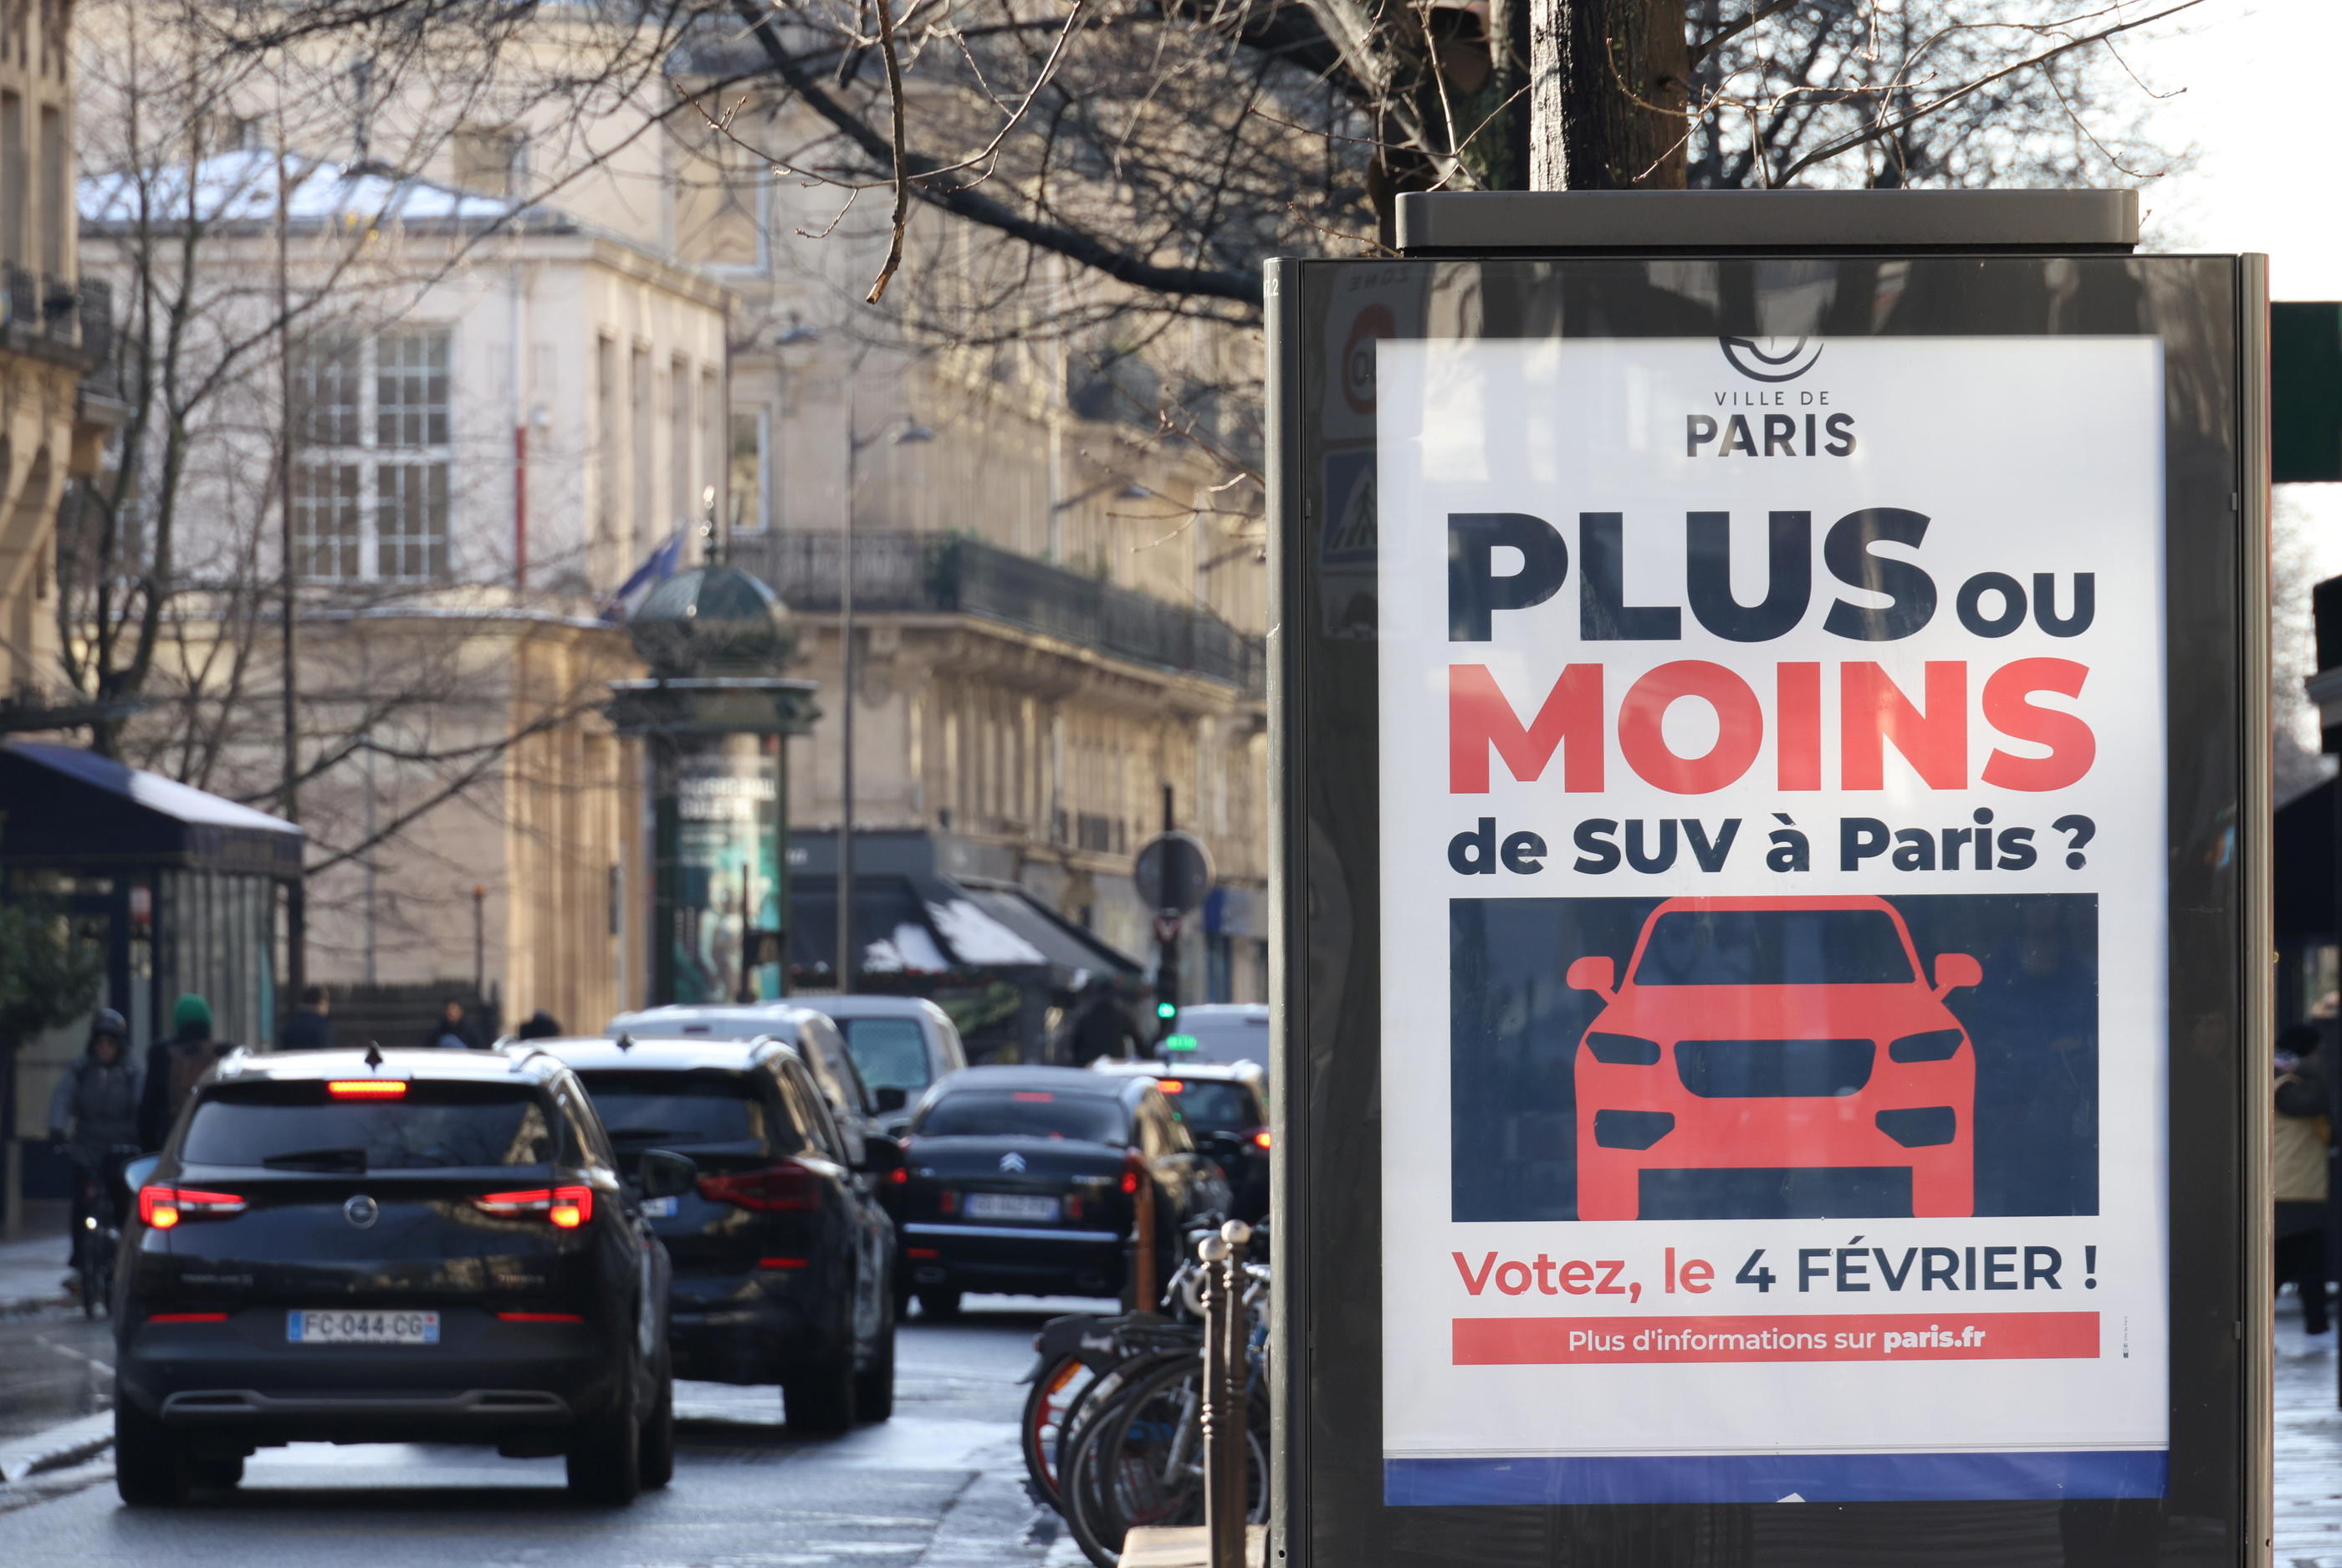 Les Parisiens devront voter ce dimanche pour l'augmentation du prix du stationnement pour les SUV. LP/Delphine Goldsztejn